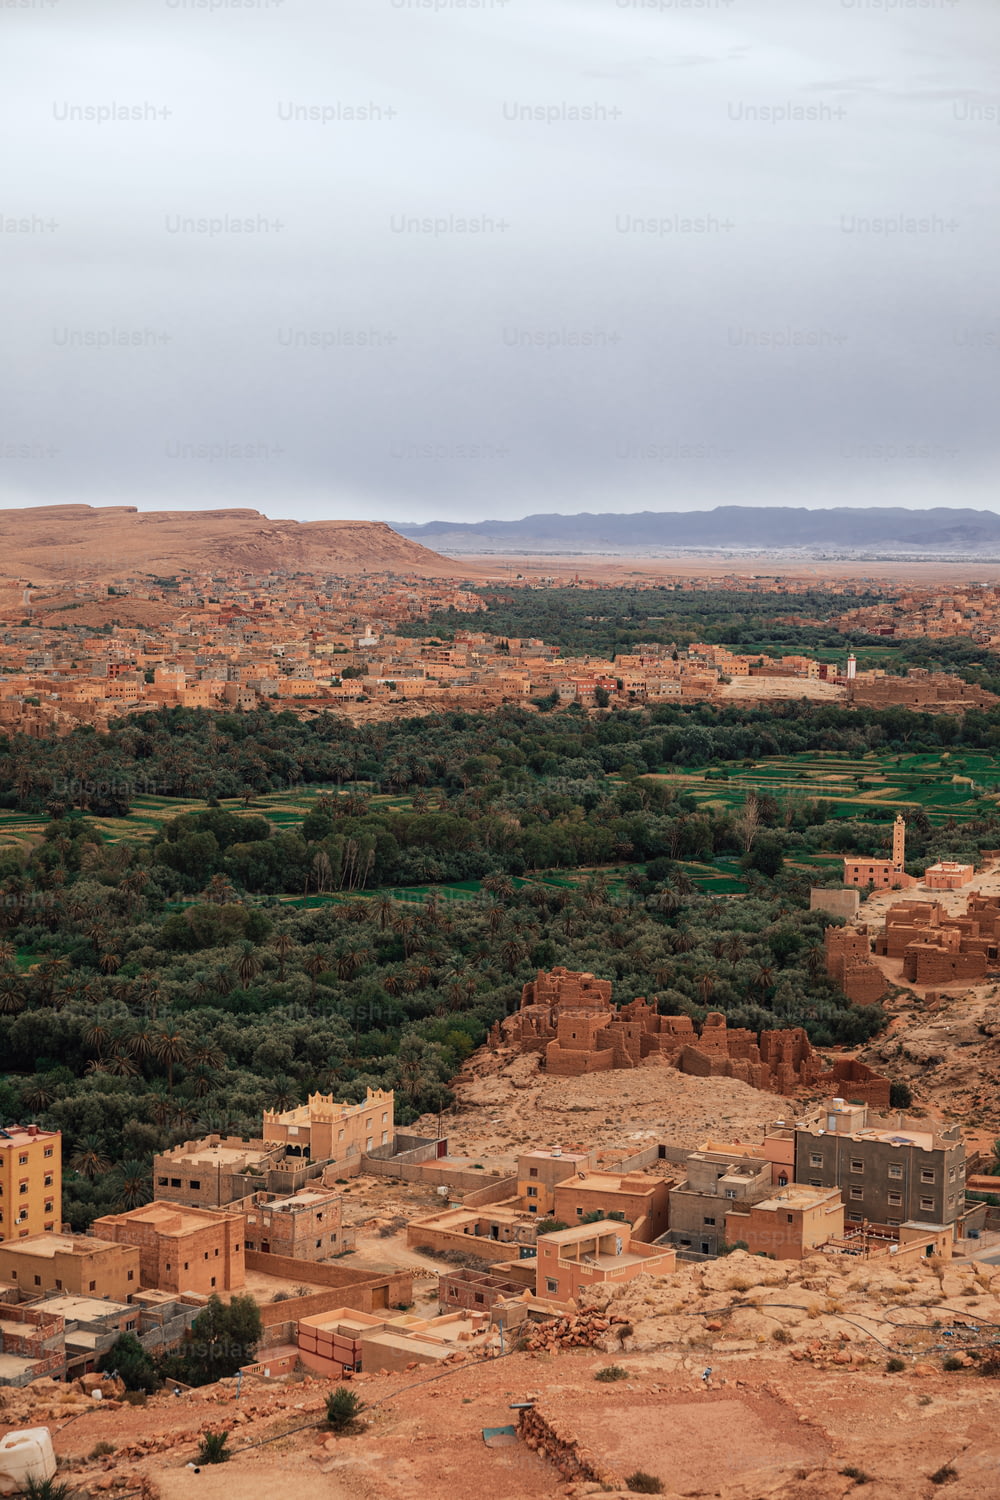 Blick auf ein kleines Dorf mitten in der Wüste